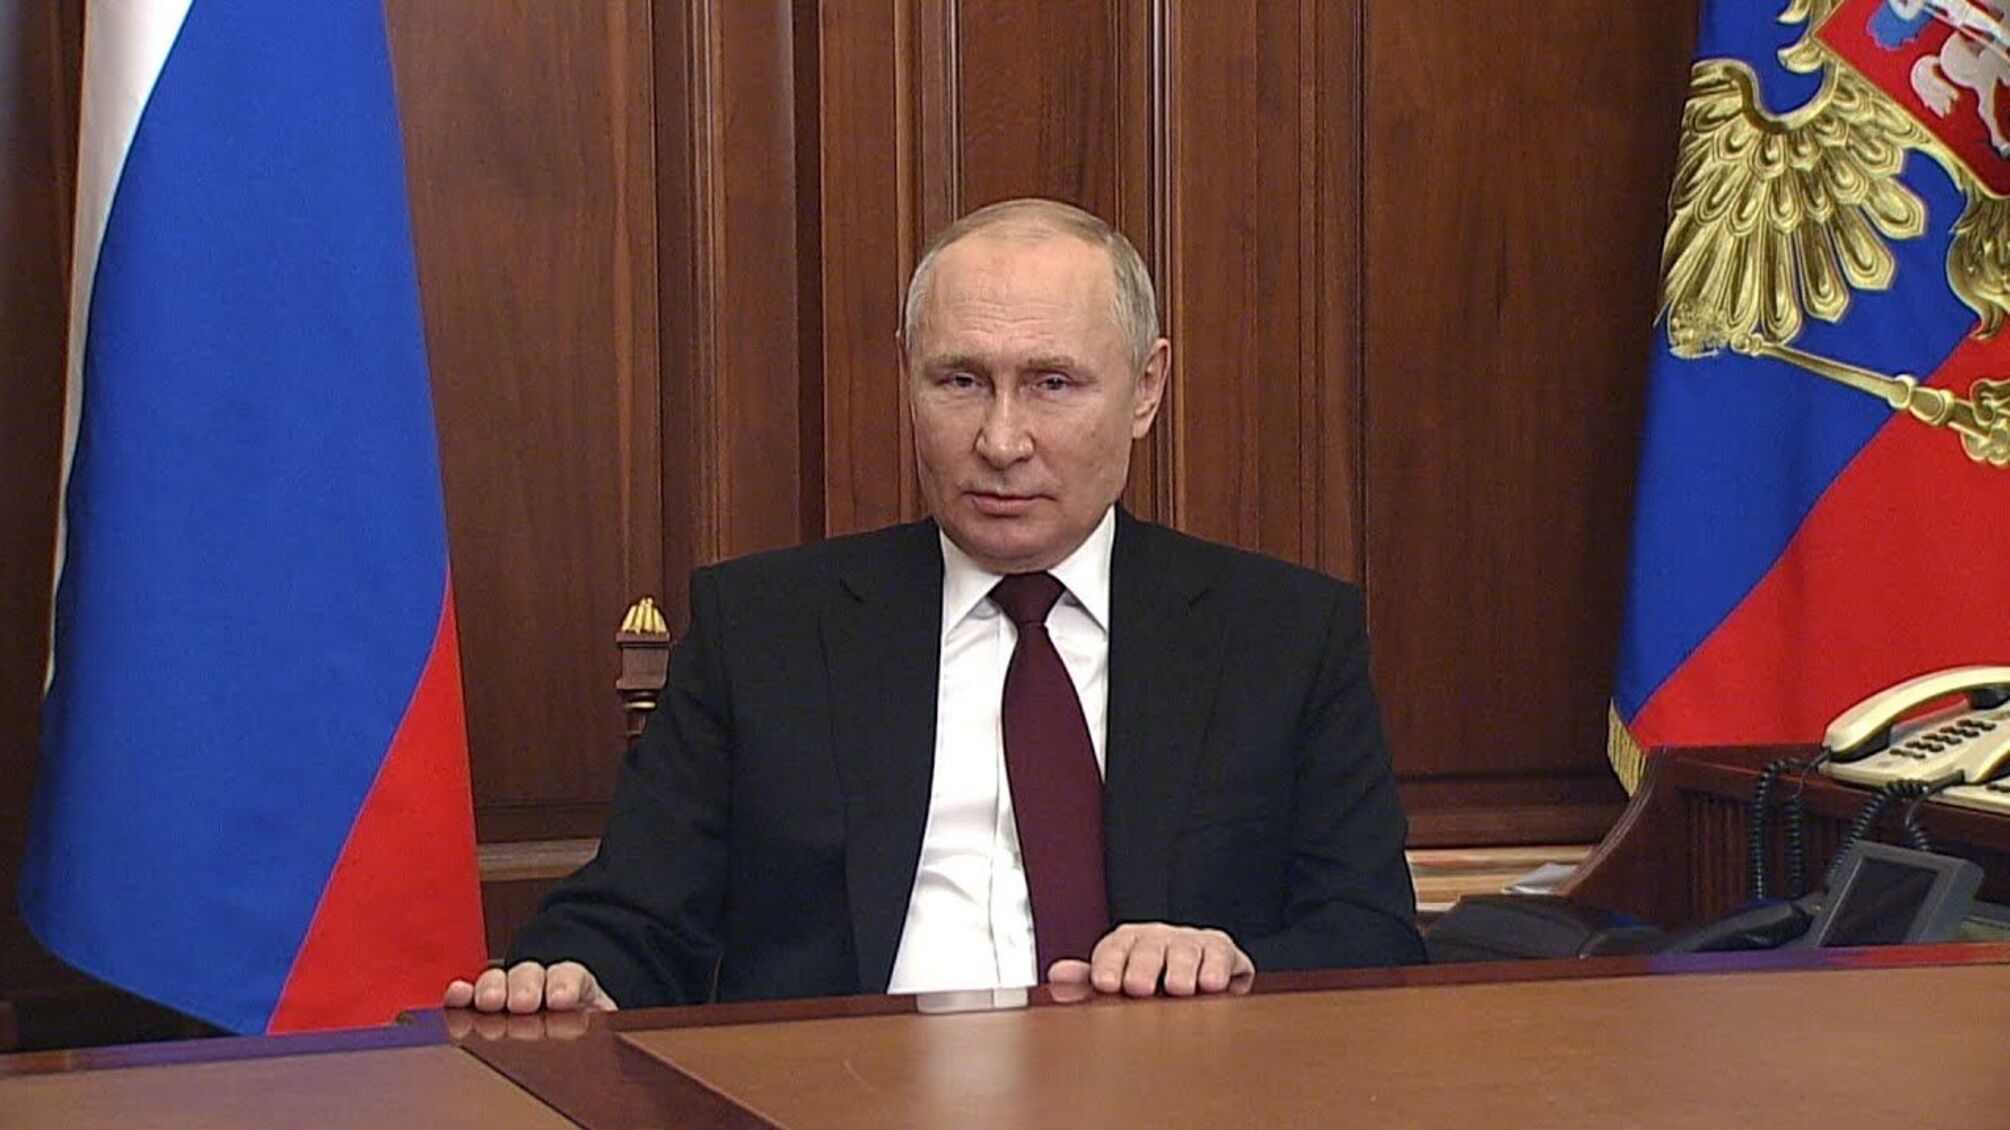 Путин выступил на экономическом форуме в Петербурге: подборка высказываний